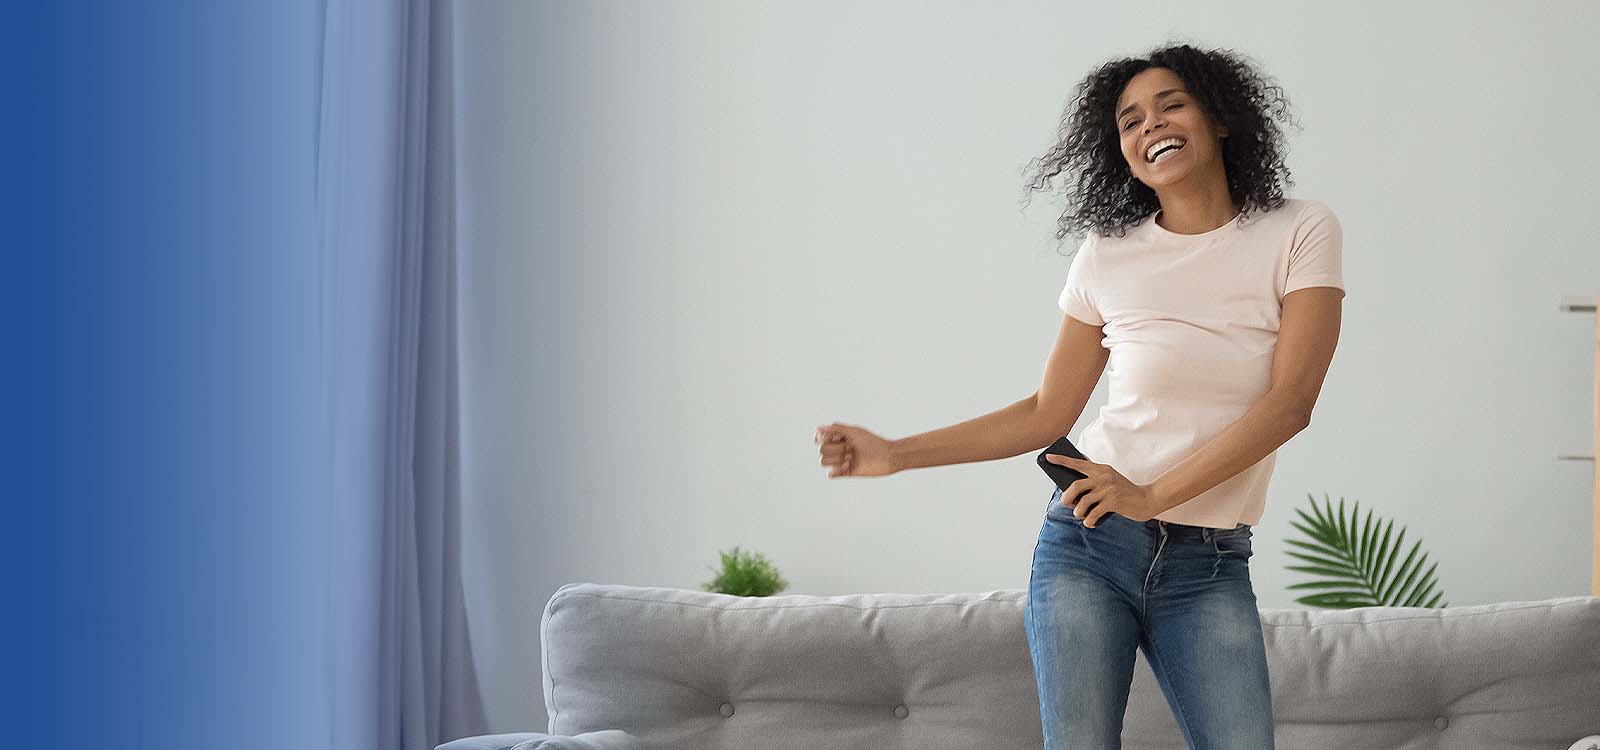 Woman dancing in her living room